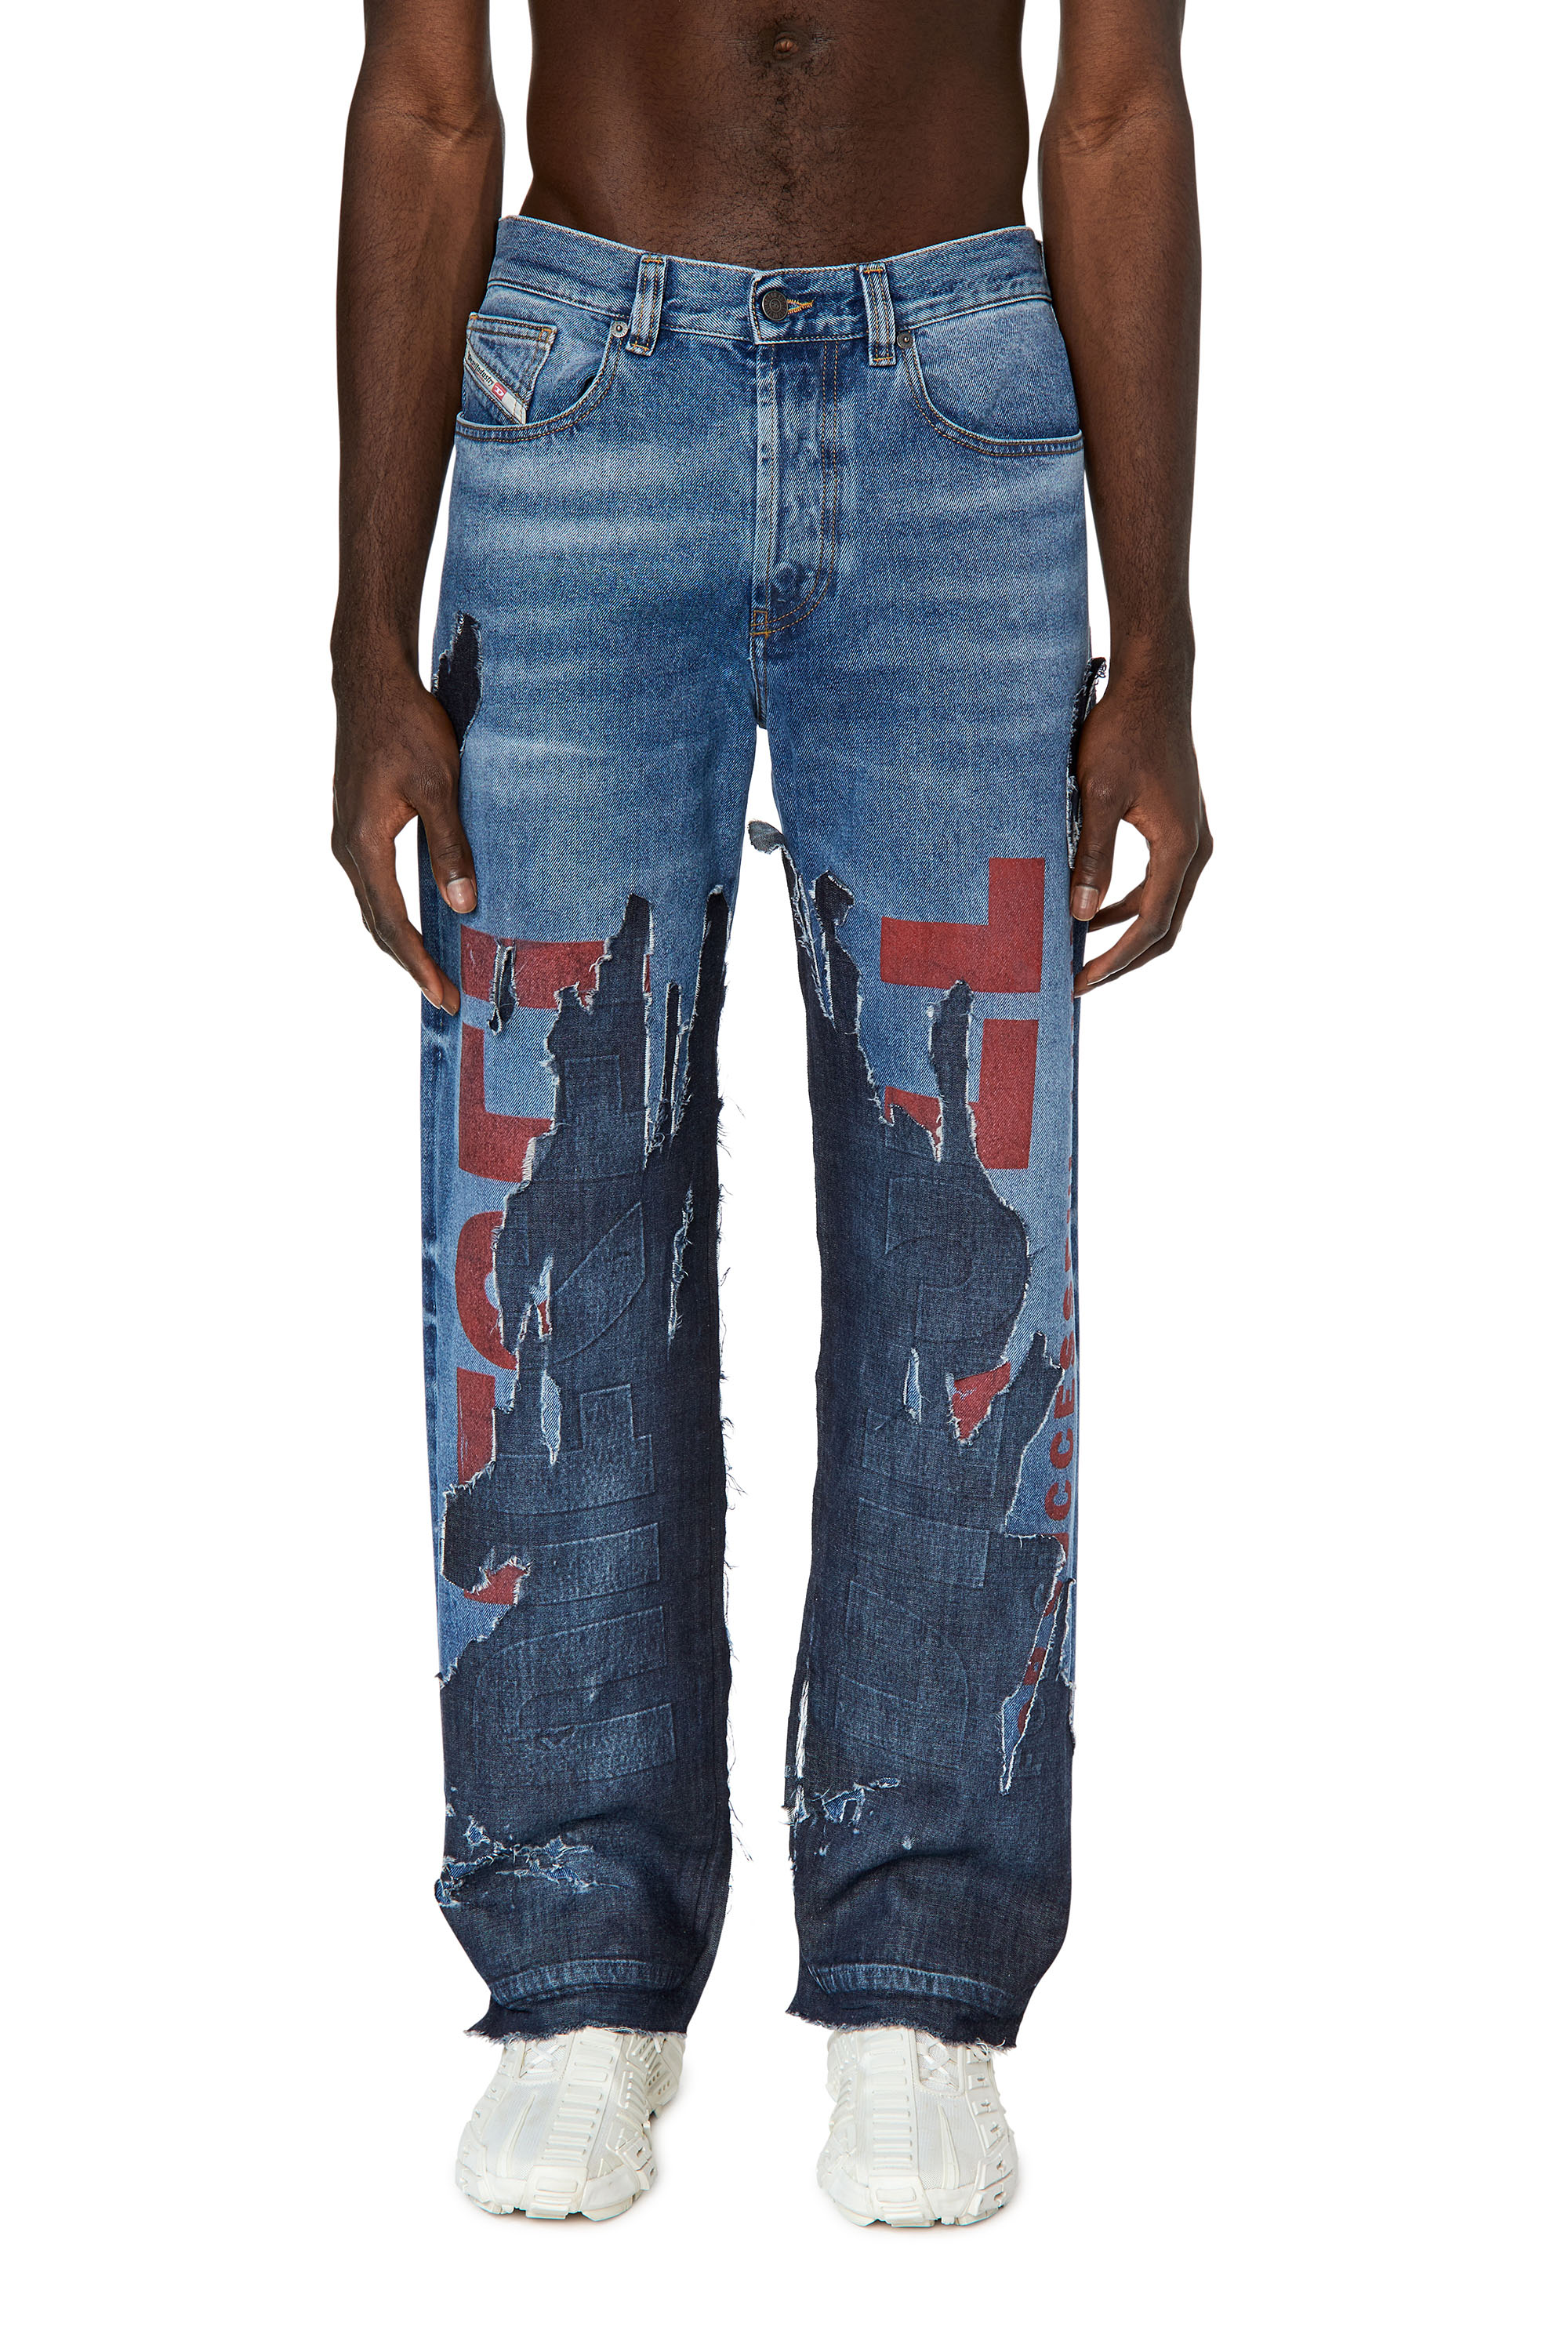 Men's Jeans: Skinny, Slim, Bootcut | Diesel ®